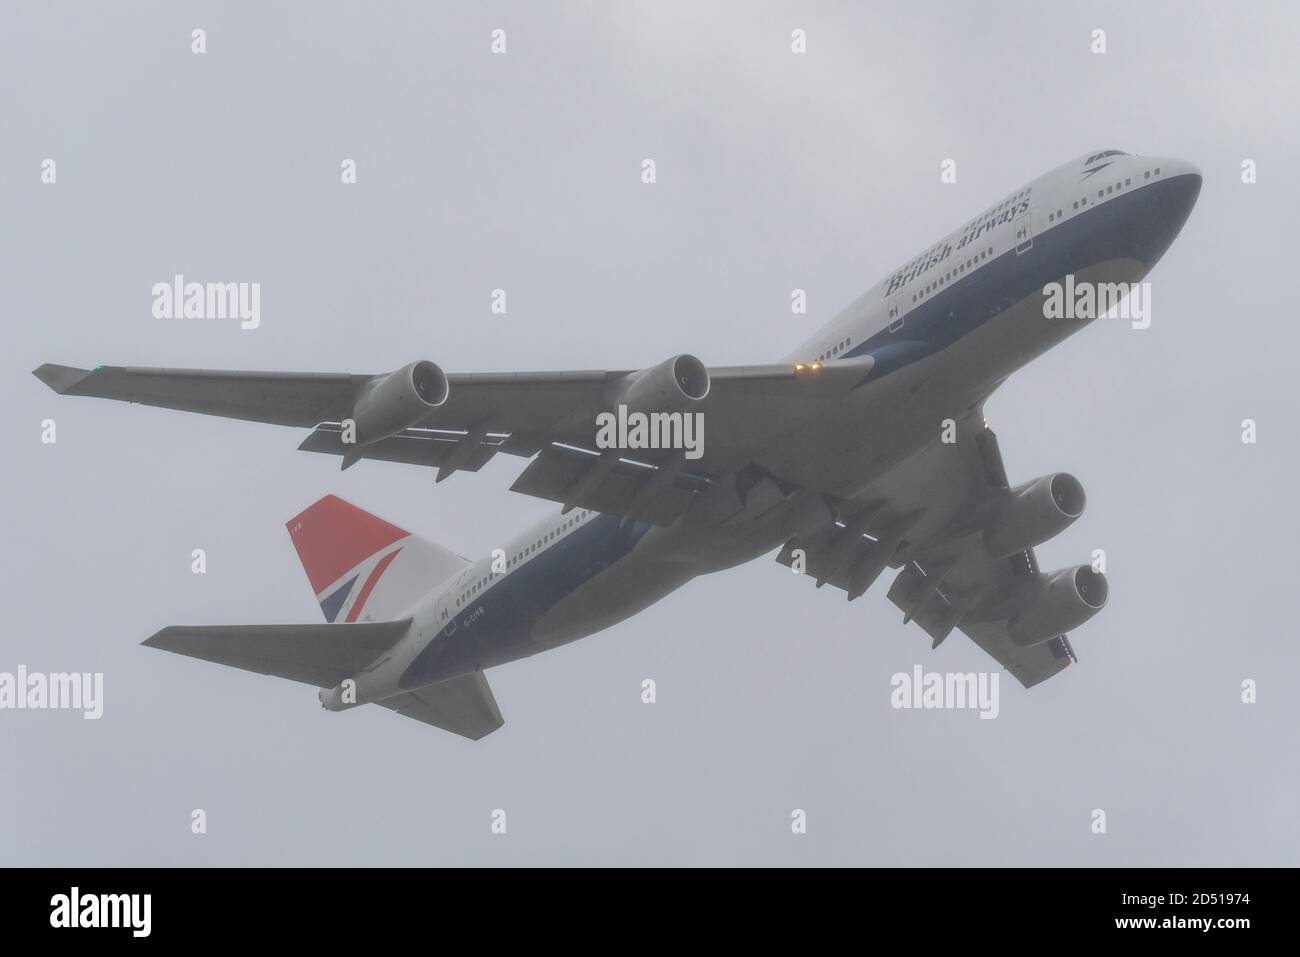 Giornata di addio per British Airways Boeing 747 aerei Jumbo Jet Airliner dopo la crisi del viaggio COVID-19. Decollo dello schema retrò centenario G-CIVB Foto Stock